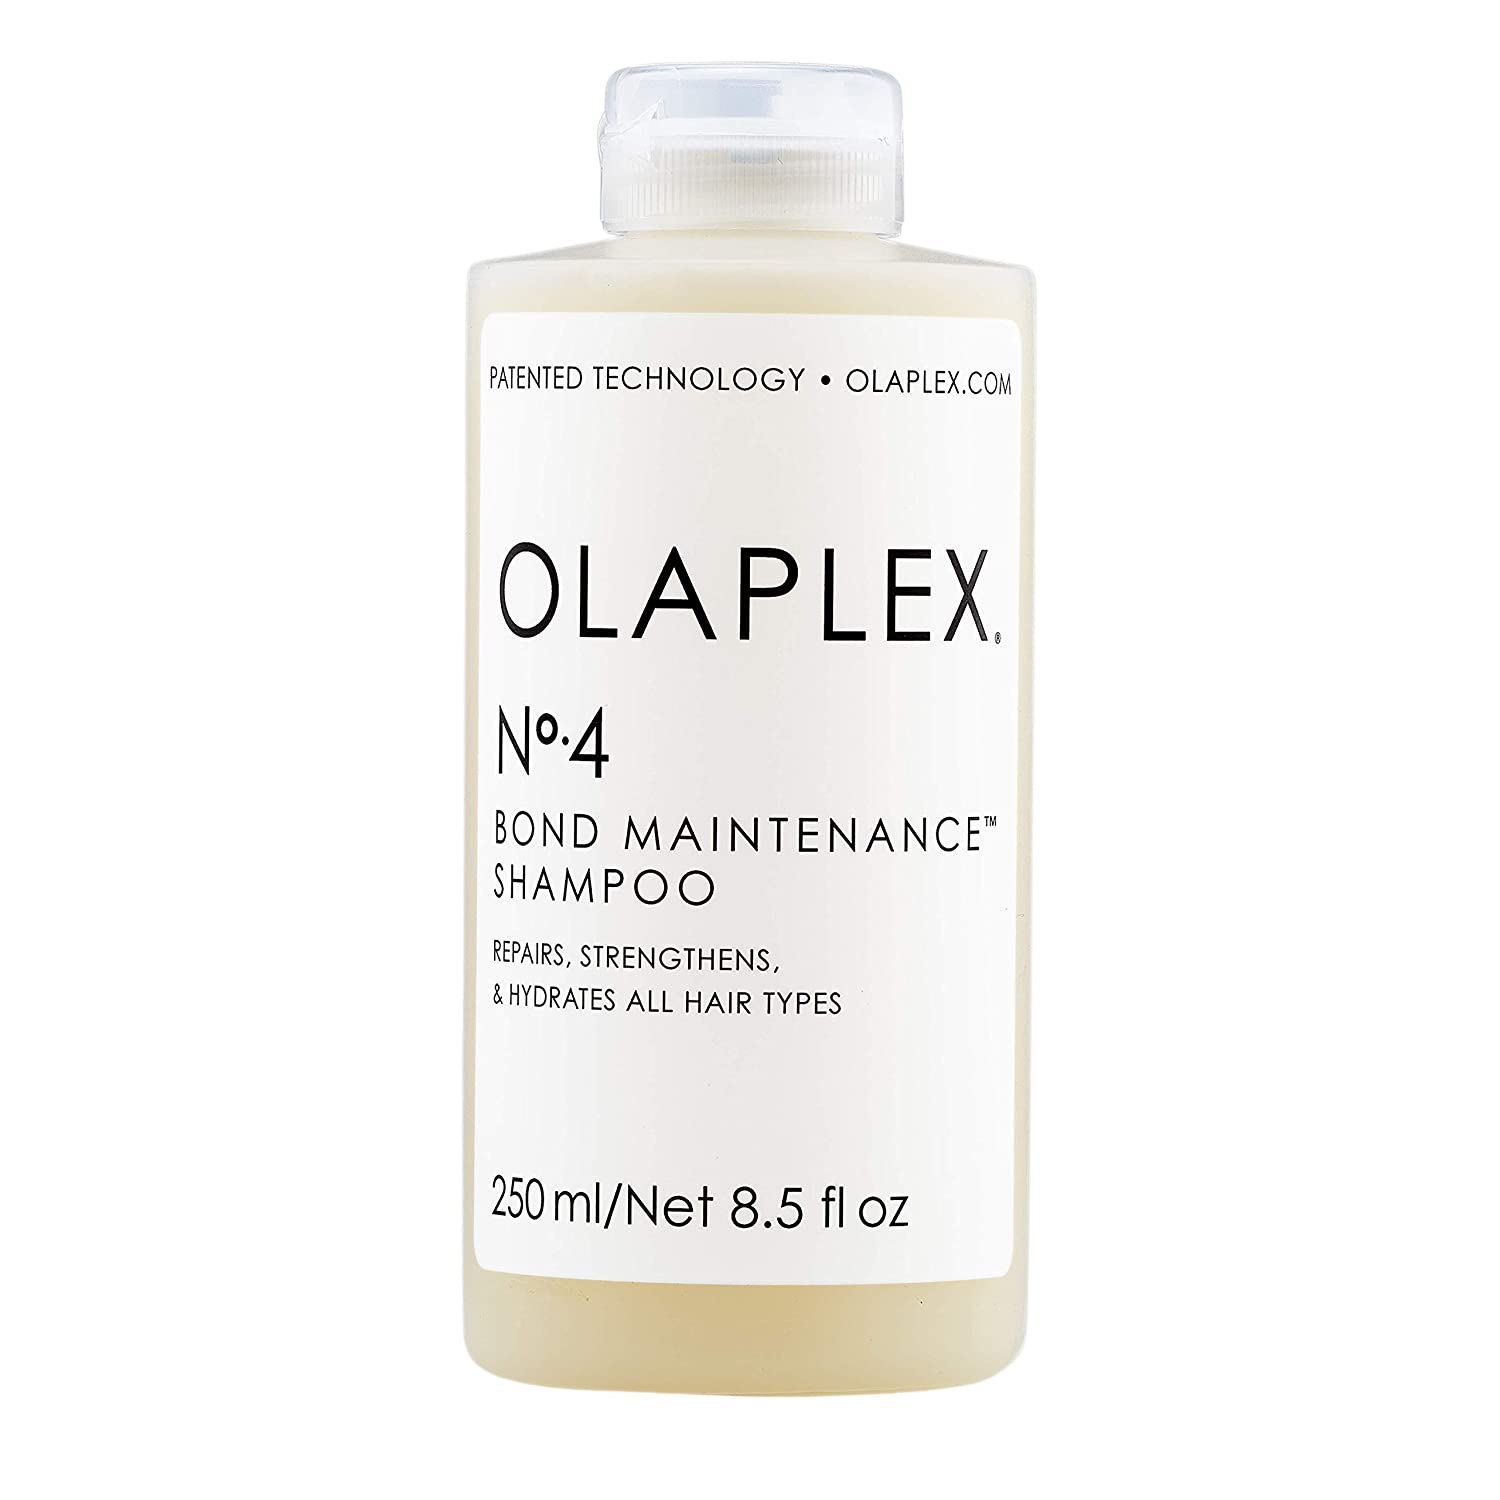 Træ beslutte Slør Sulfatfri Shampoo (2022) → Find den bedste sulfatfri shampoo